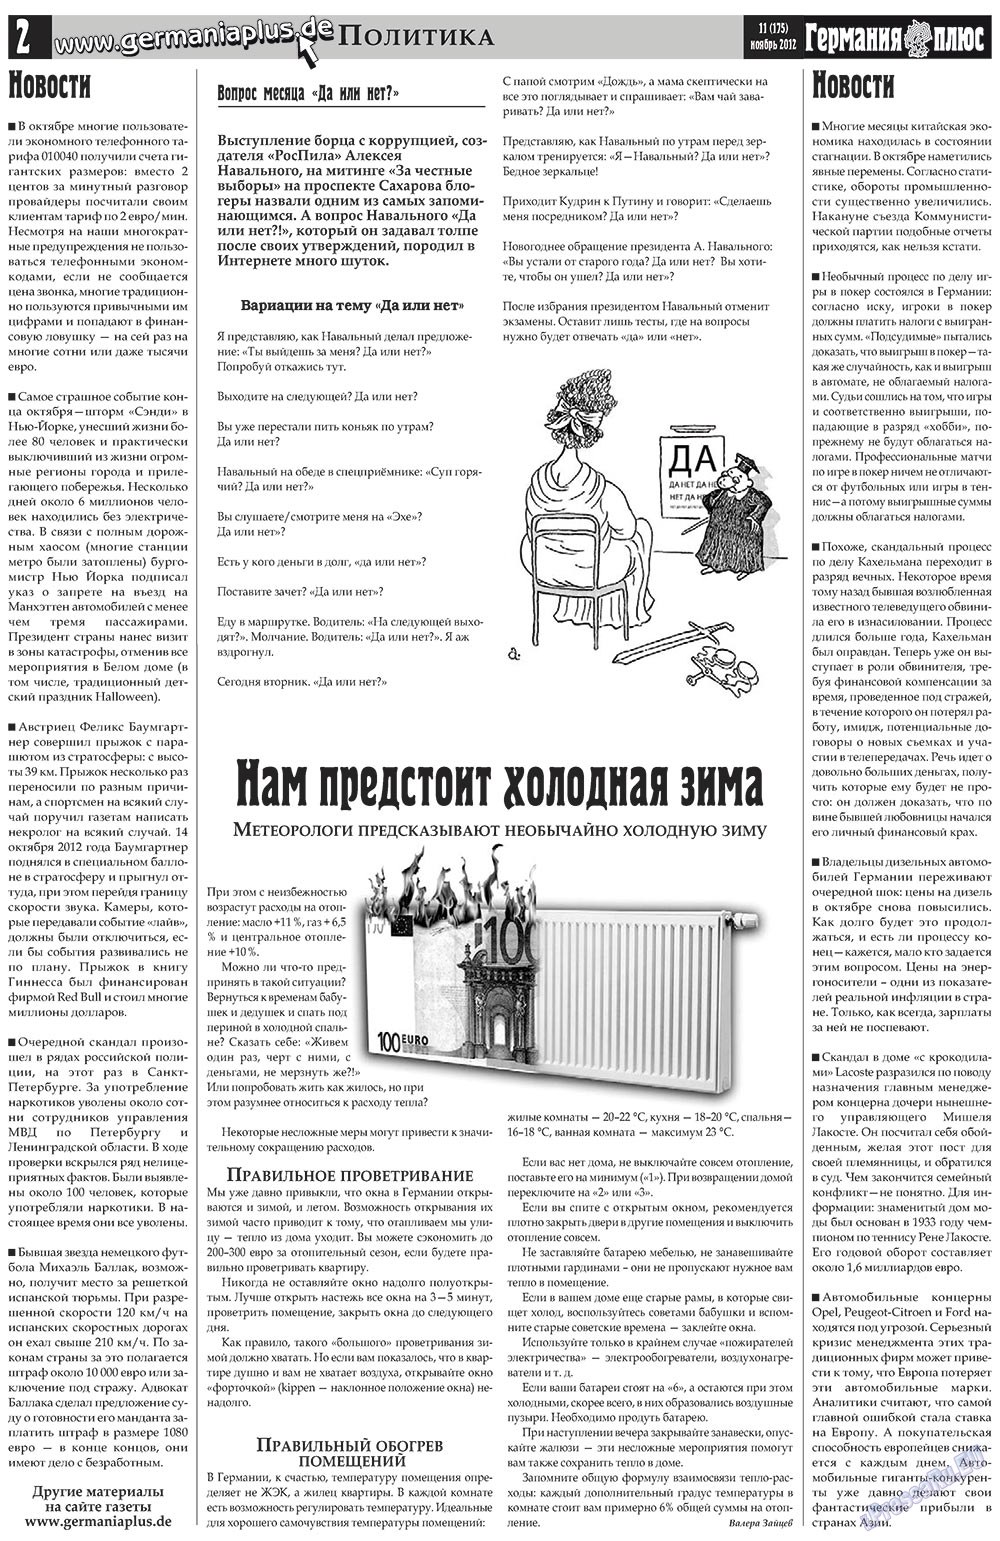 Германия плюс, газета. 2012 №11 стр.2